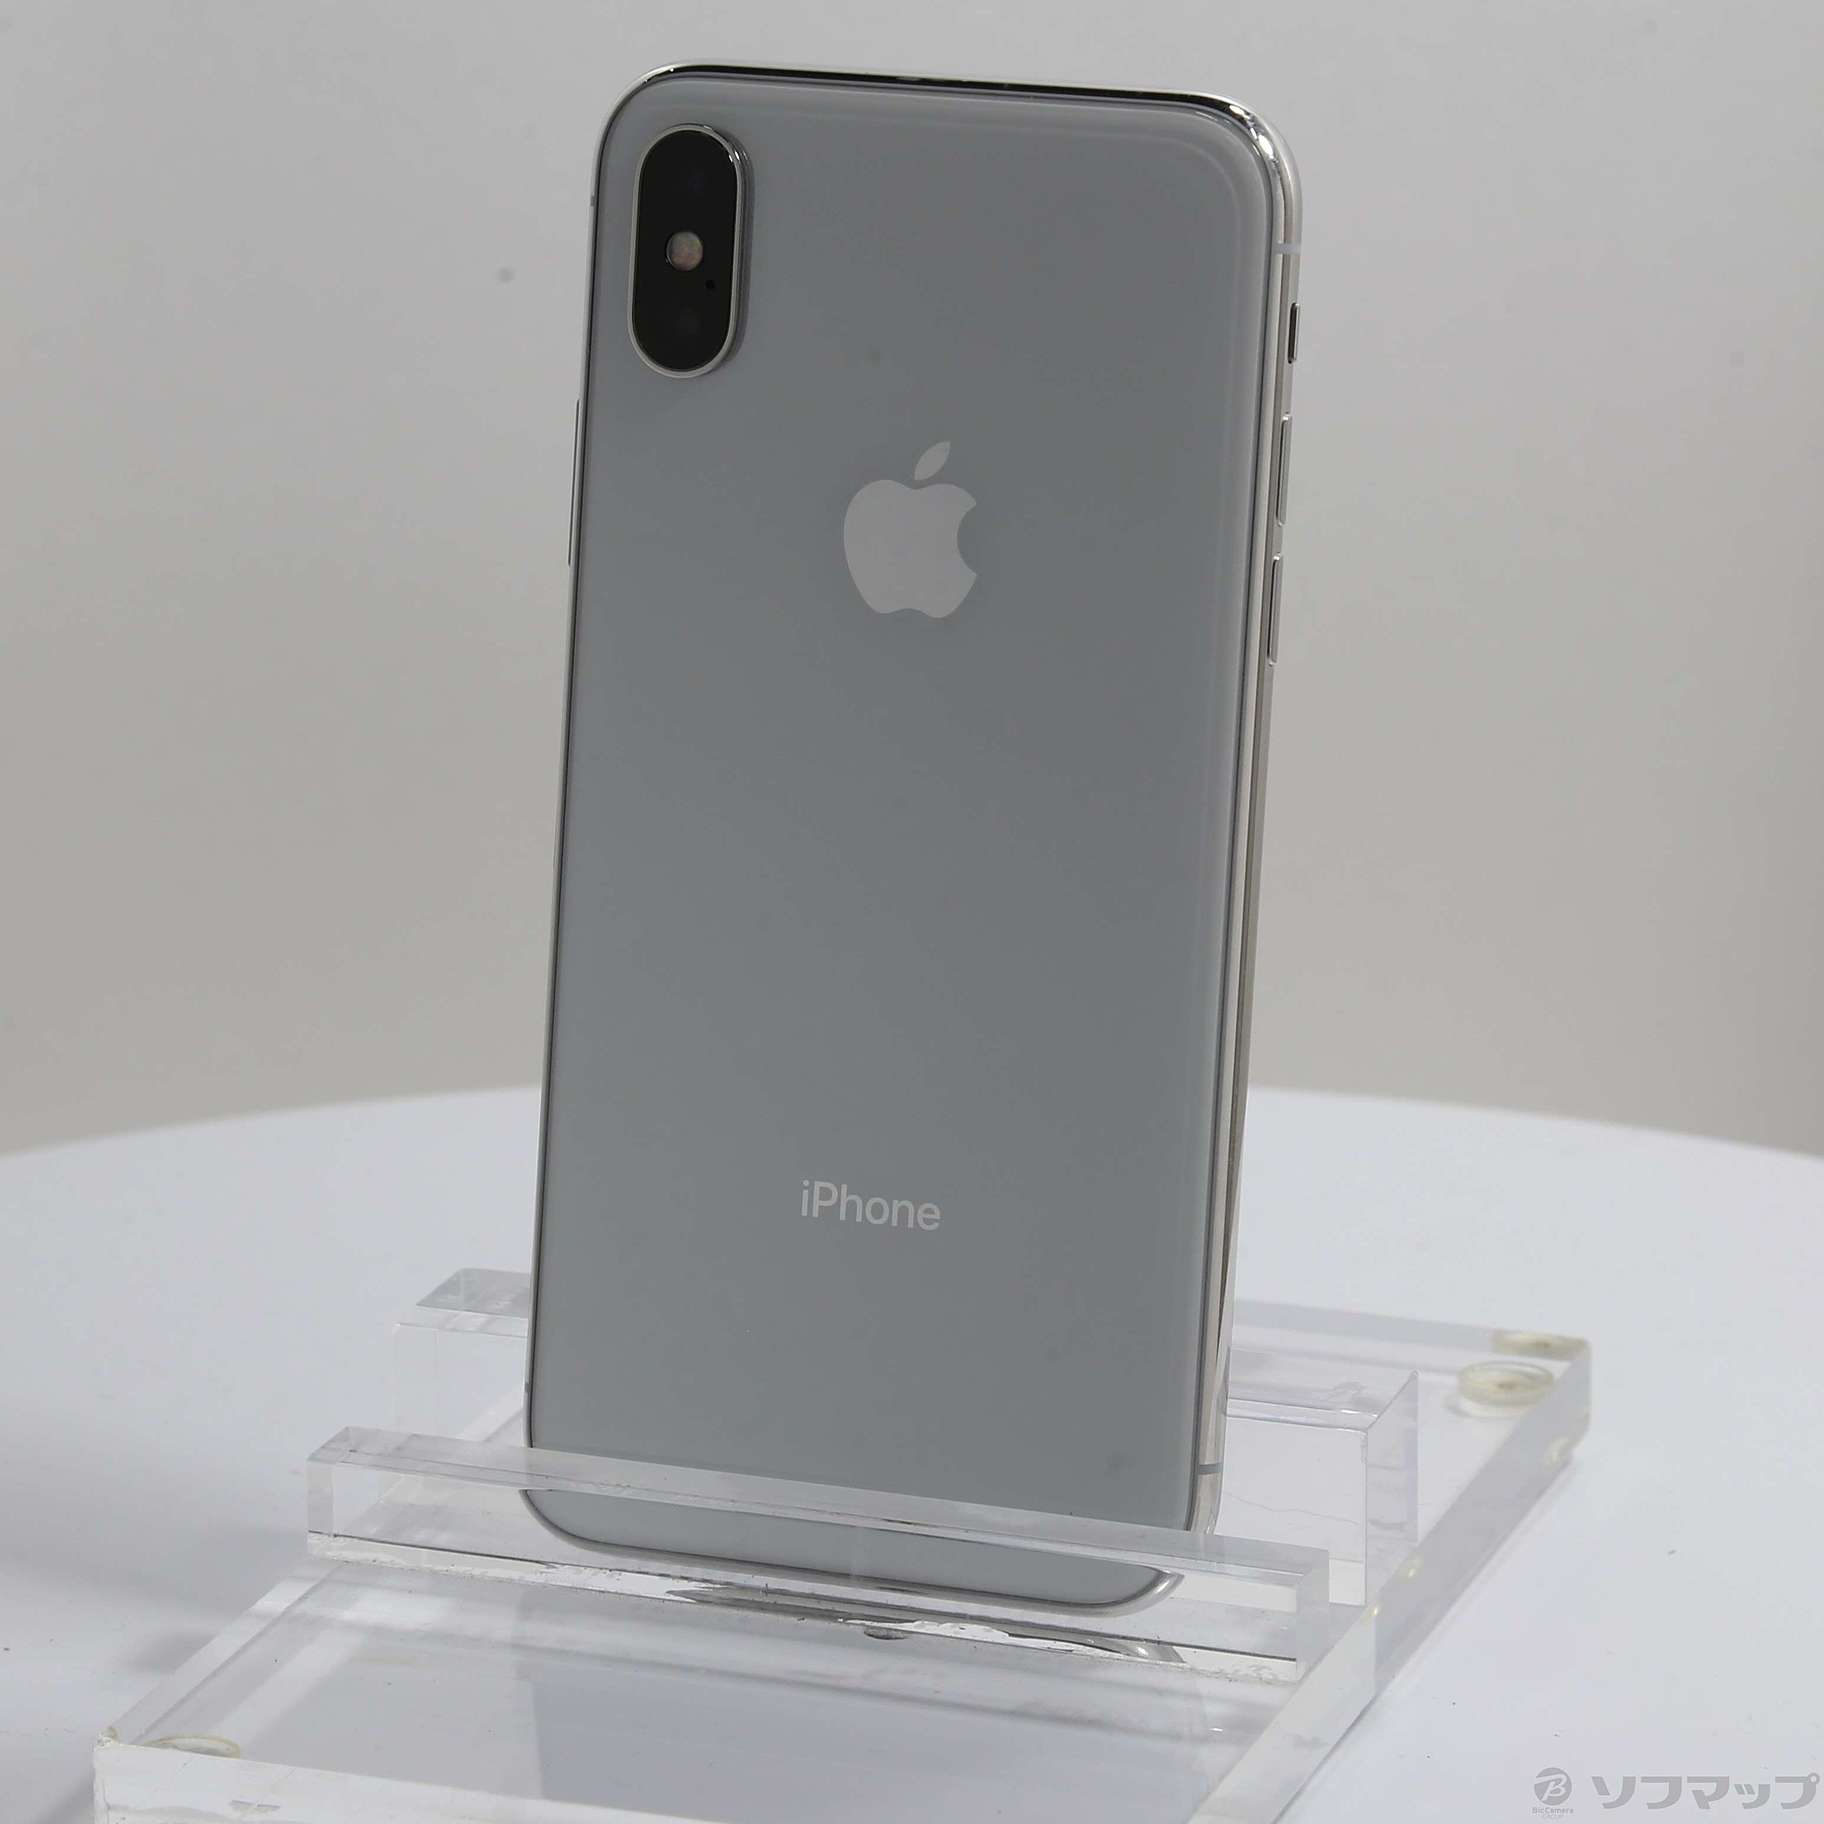 アップルiPhoneX Apple iPhone X 256GB SIMフリー ホワイト